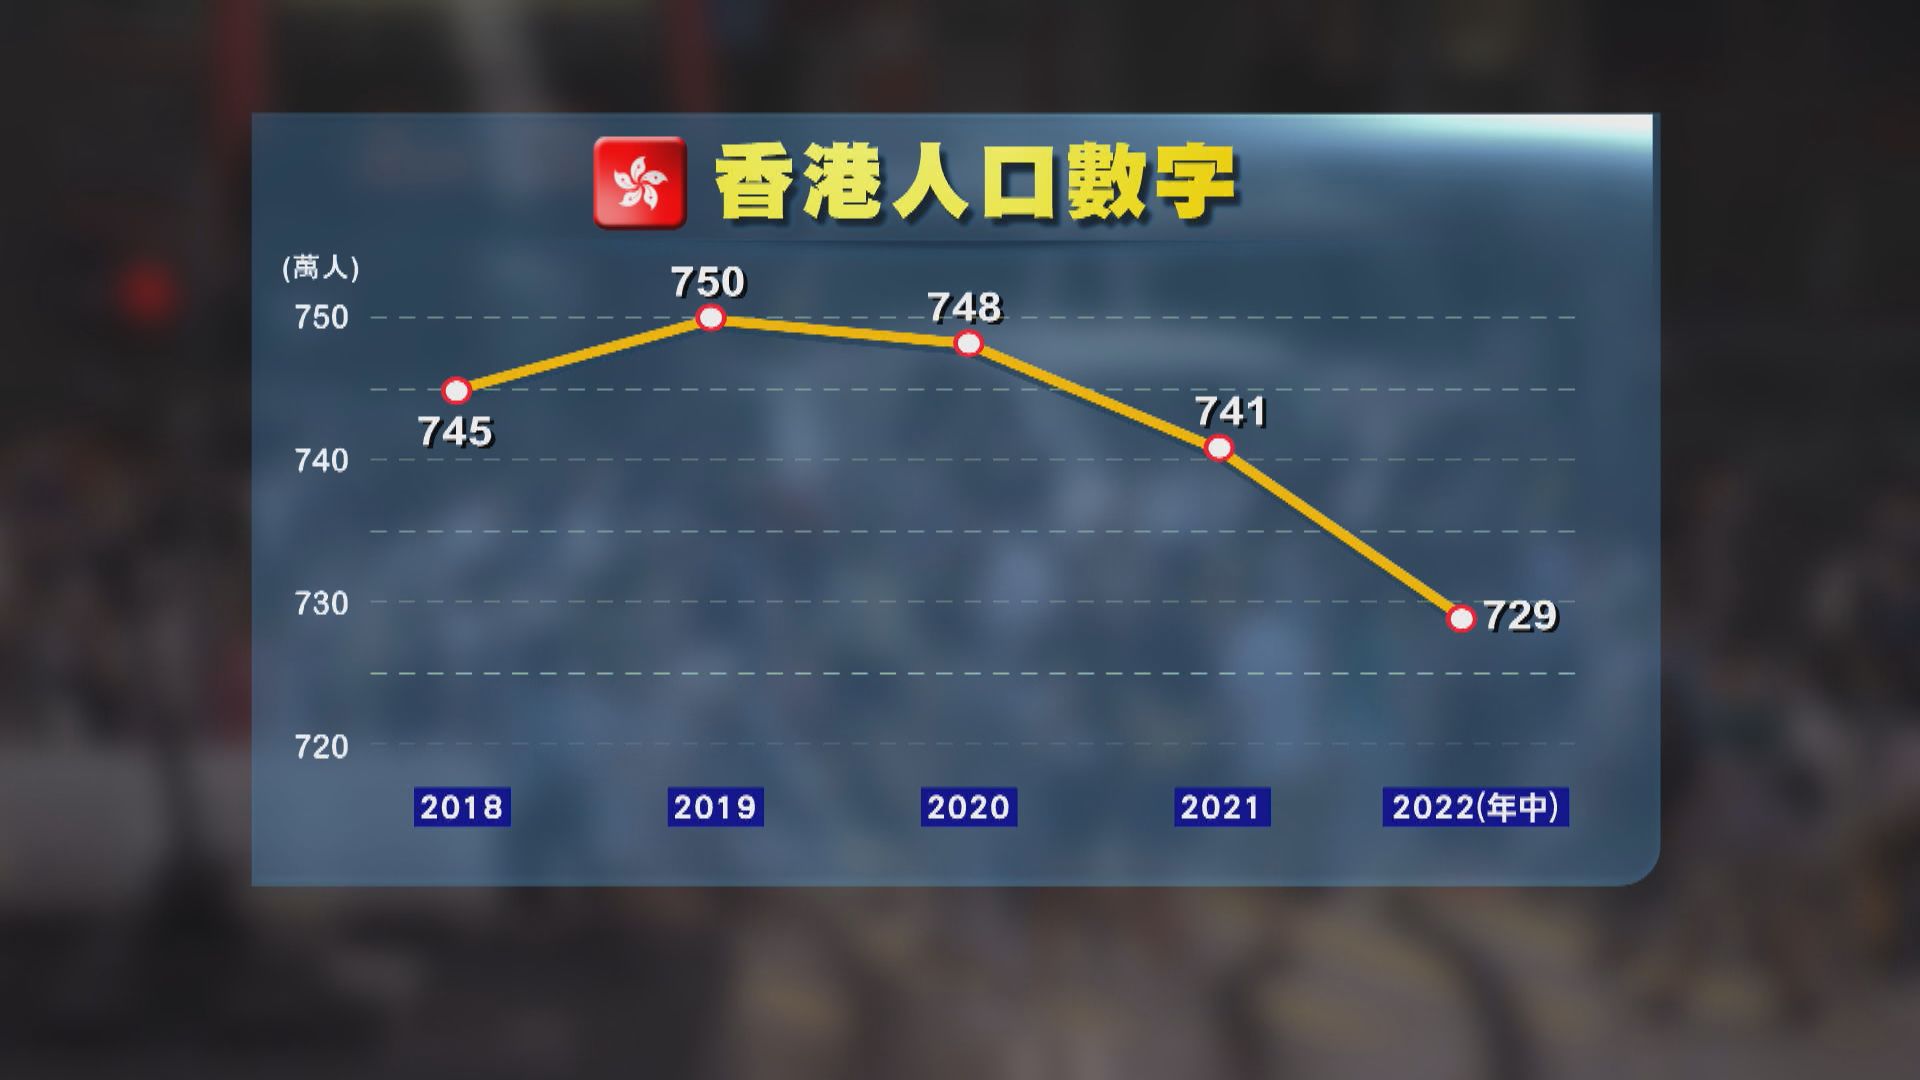 香港人口729萬按年跌1.6%　政府指淨遷移涵蓋移民、工作等